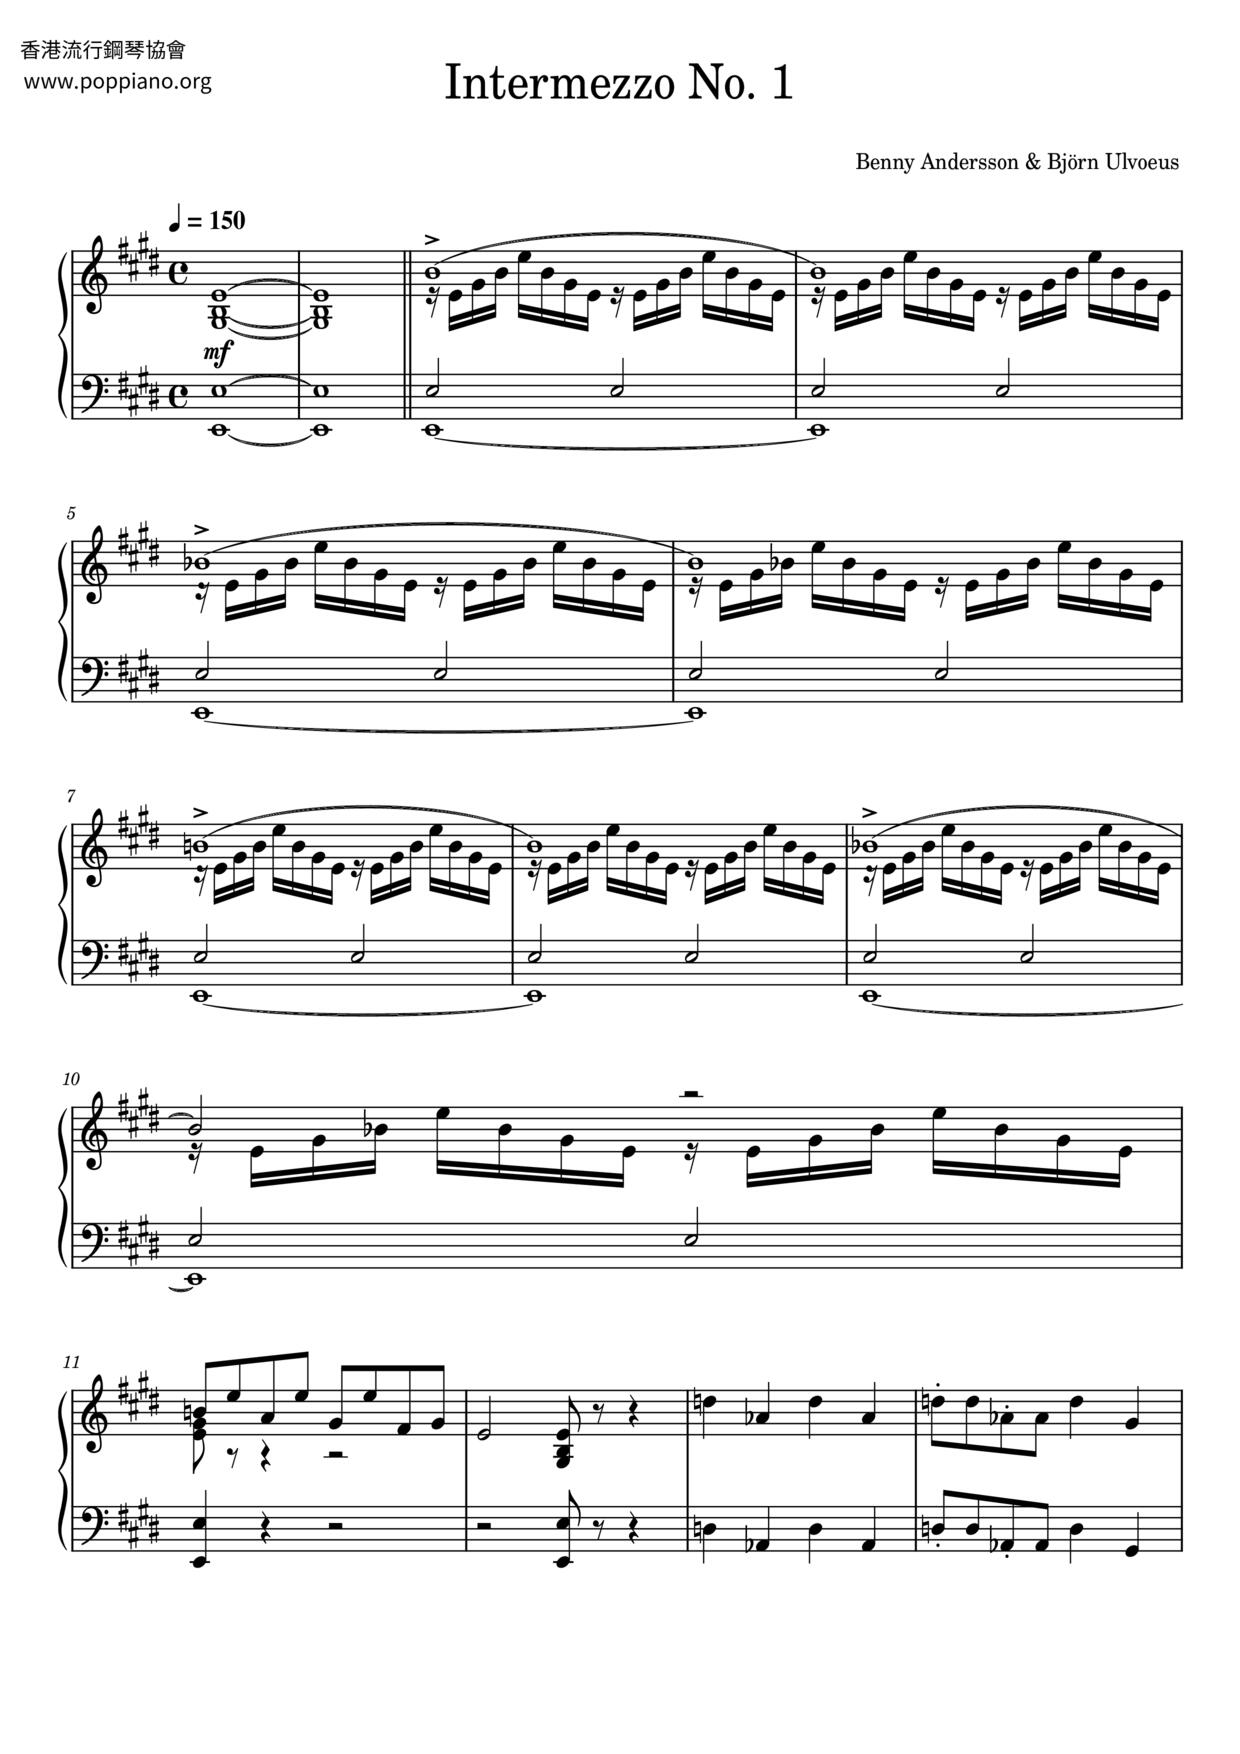 Intermezzo No. 1 Score